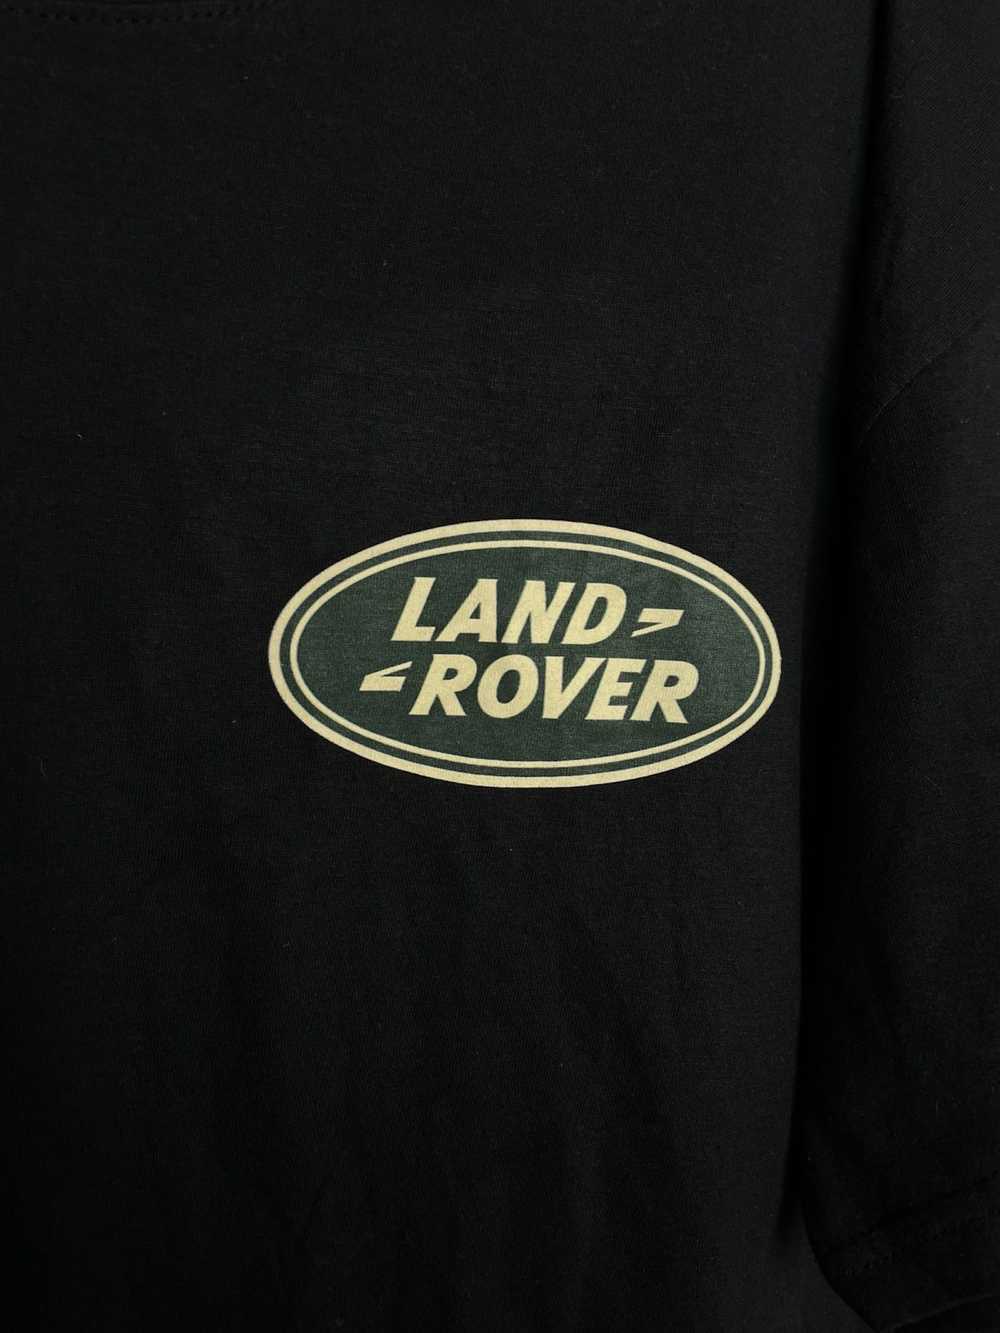 Racing Land Rover Racing T-Shirt - image 3